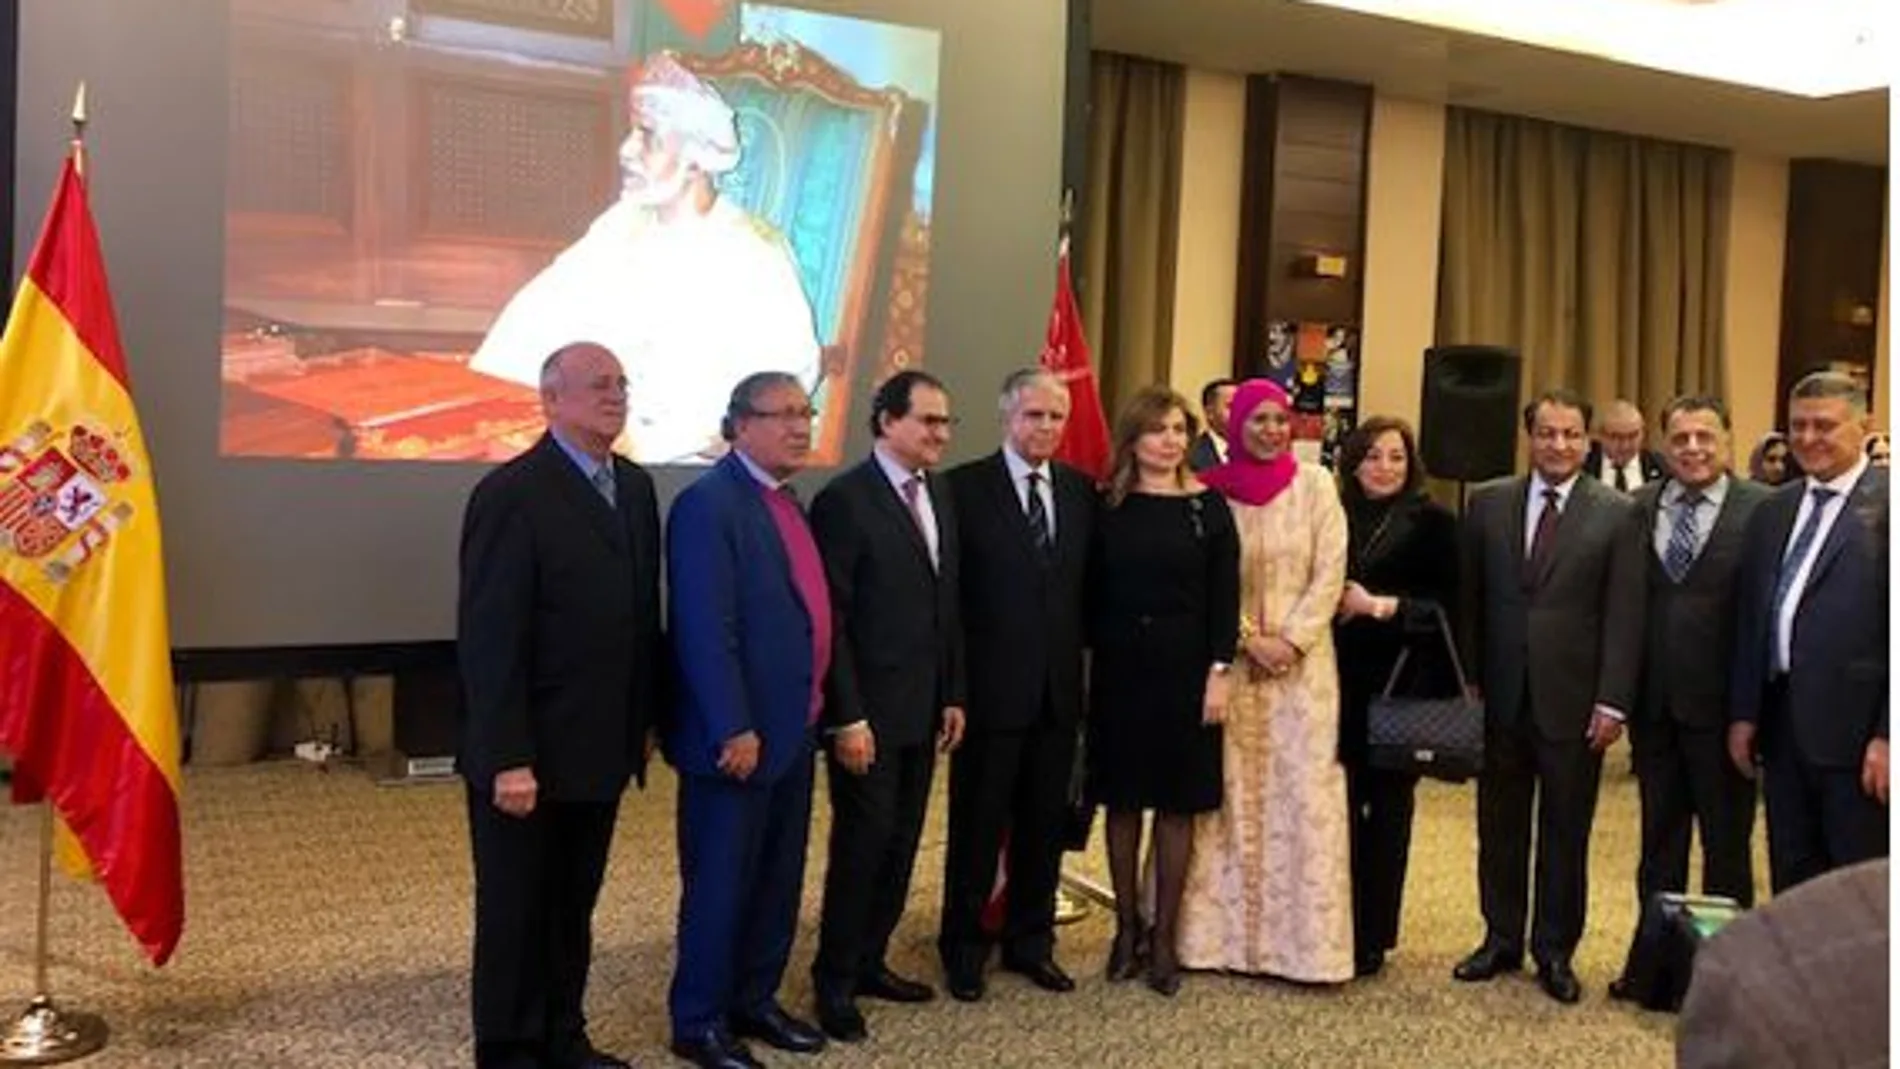 En el centro la anfitriona Kifaya Khamis Al Raisi, acompaña de los embajadores de Venezuela, Palestina, Arabia Saudí, Líbano, Liga Árabe, Kuwait, junto a la bandera de España